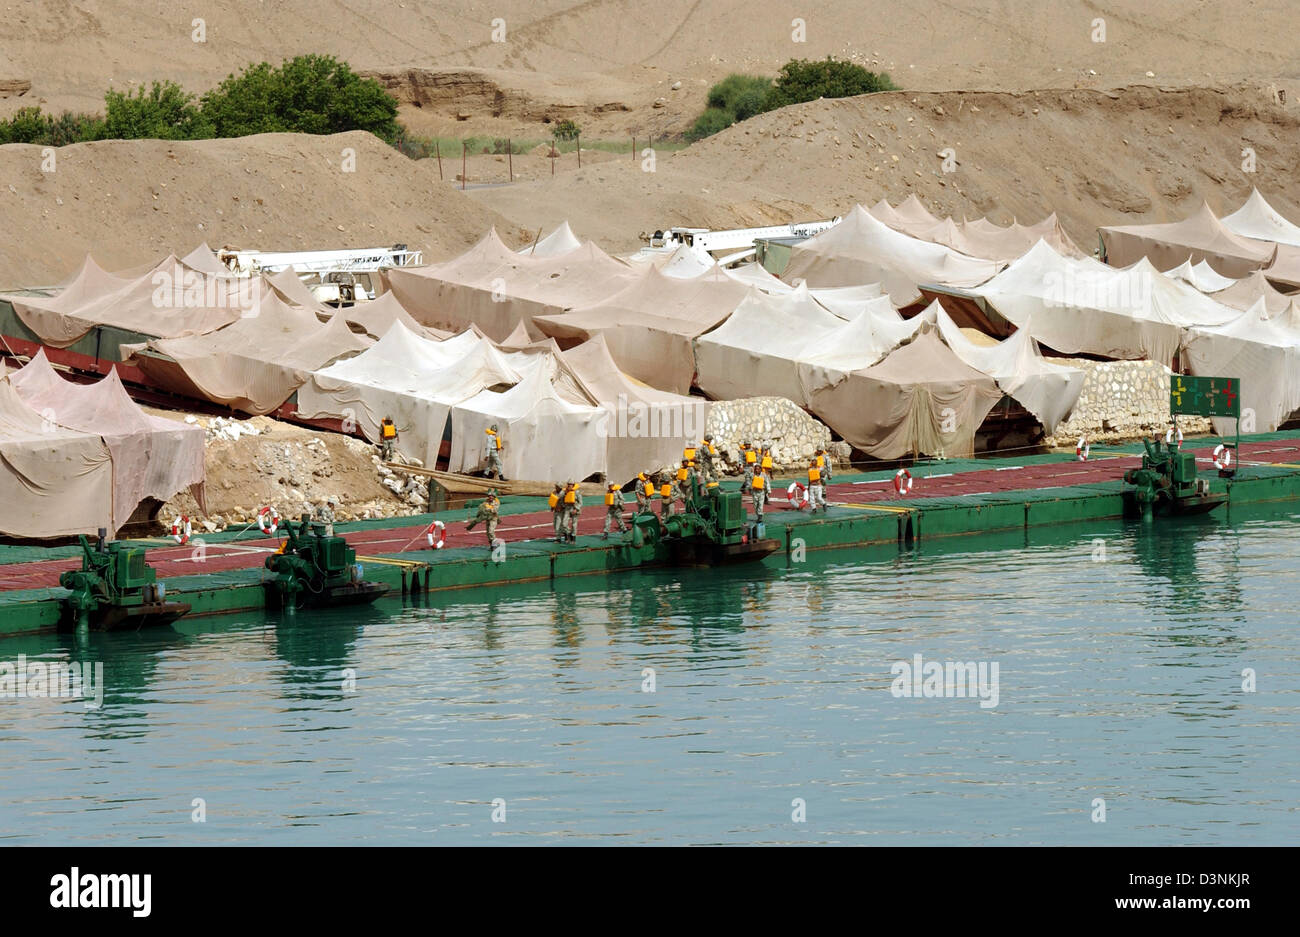 Das Bild zeigt ein Zeltlager eines ägyptischen Armee Post an den Suezkanal, Ägypten, 17. April 2006. 195 Kilometer Suezkanal verbindet das Mittelmeer mit dem Roten Meer über den Golf von Suez. Foto: Horst Ossinger Stockfoto